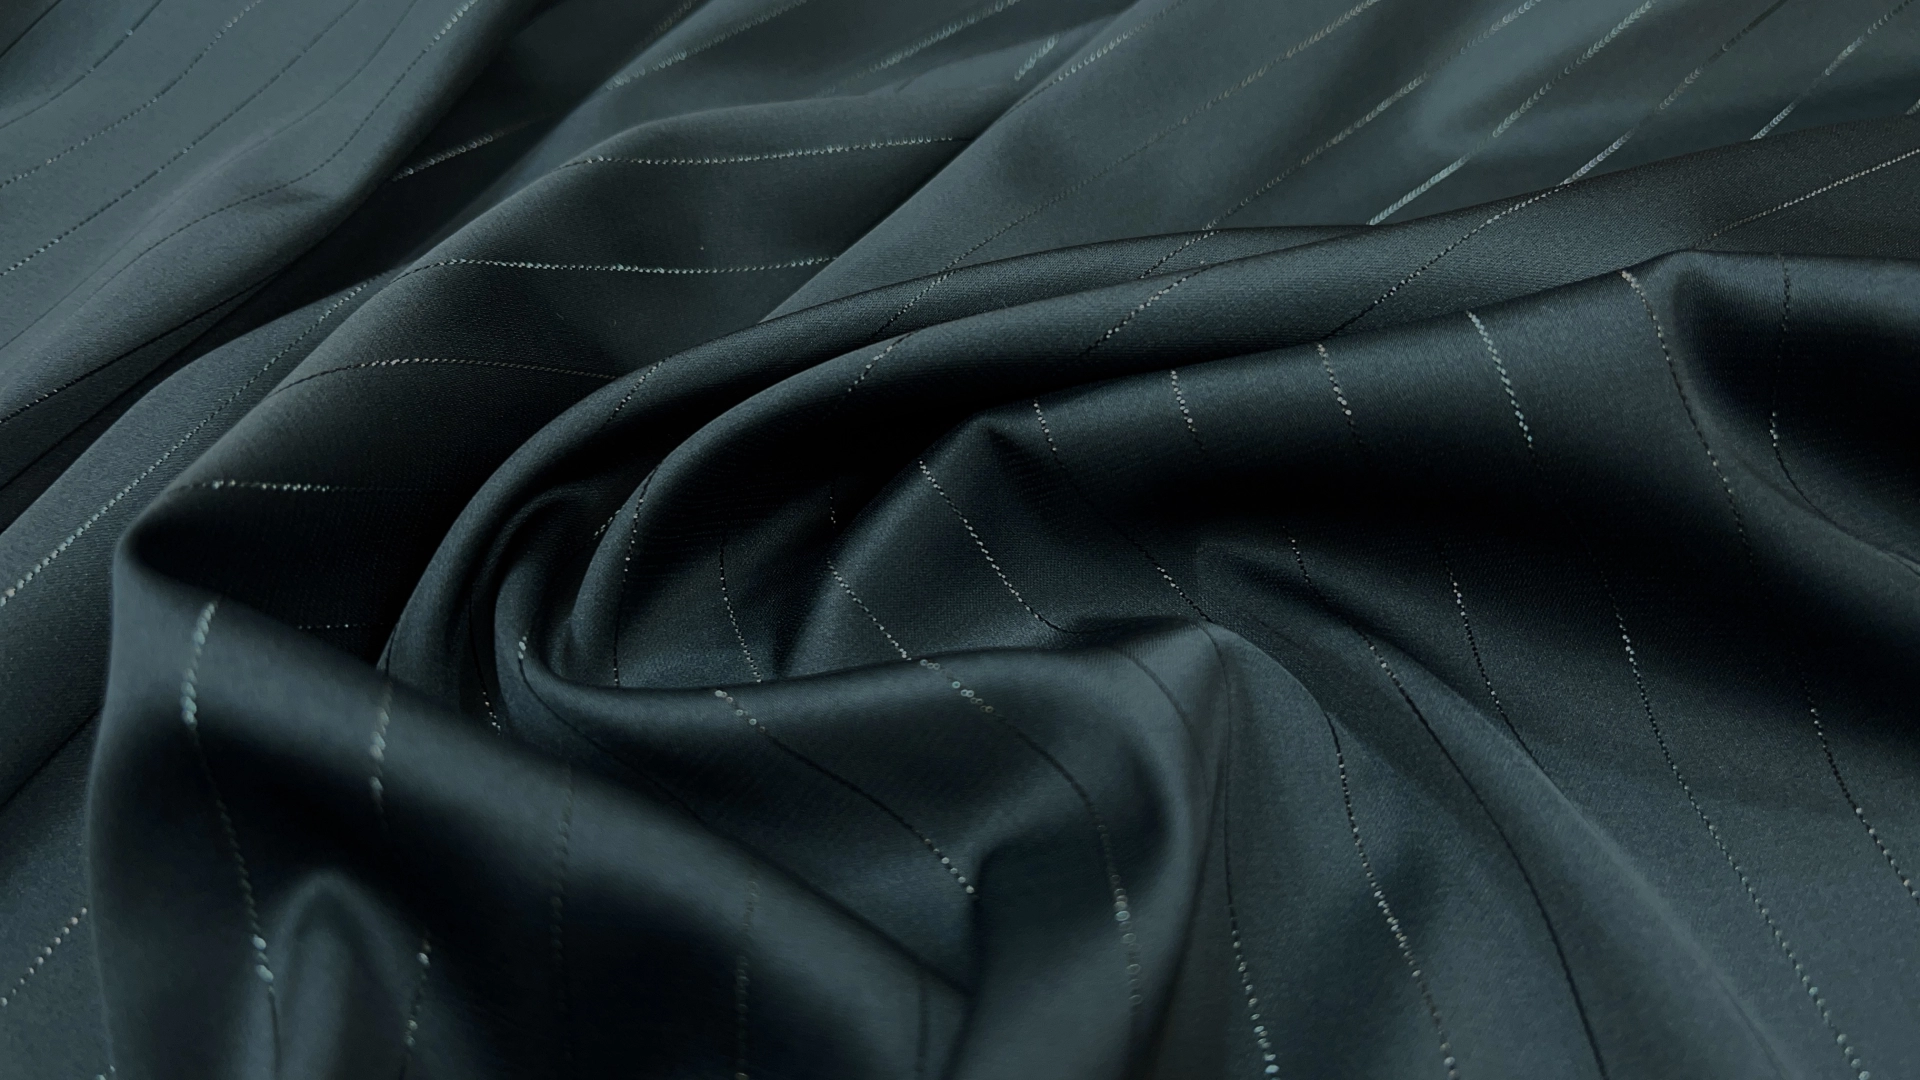 Атлас Армани сложного хвойного цвета с люрексовой продольной нитью. Атлас изумительного качества, струящийся, с матовым переливом как у натурального шёлка и с бархатистой изнанкой. Идеален для пошива вечерней рубашки, блузы, топа или платья.